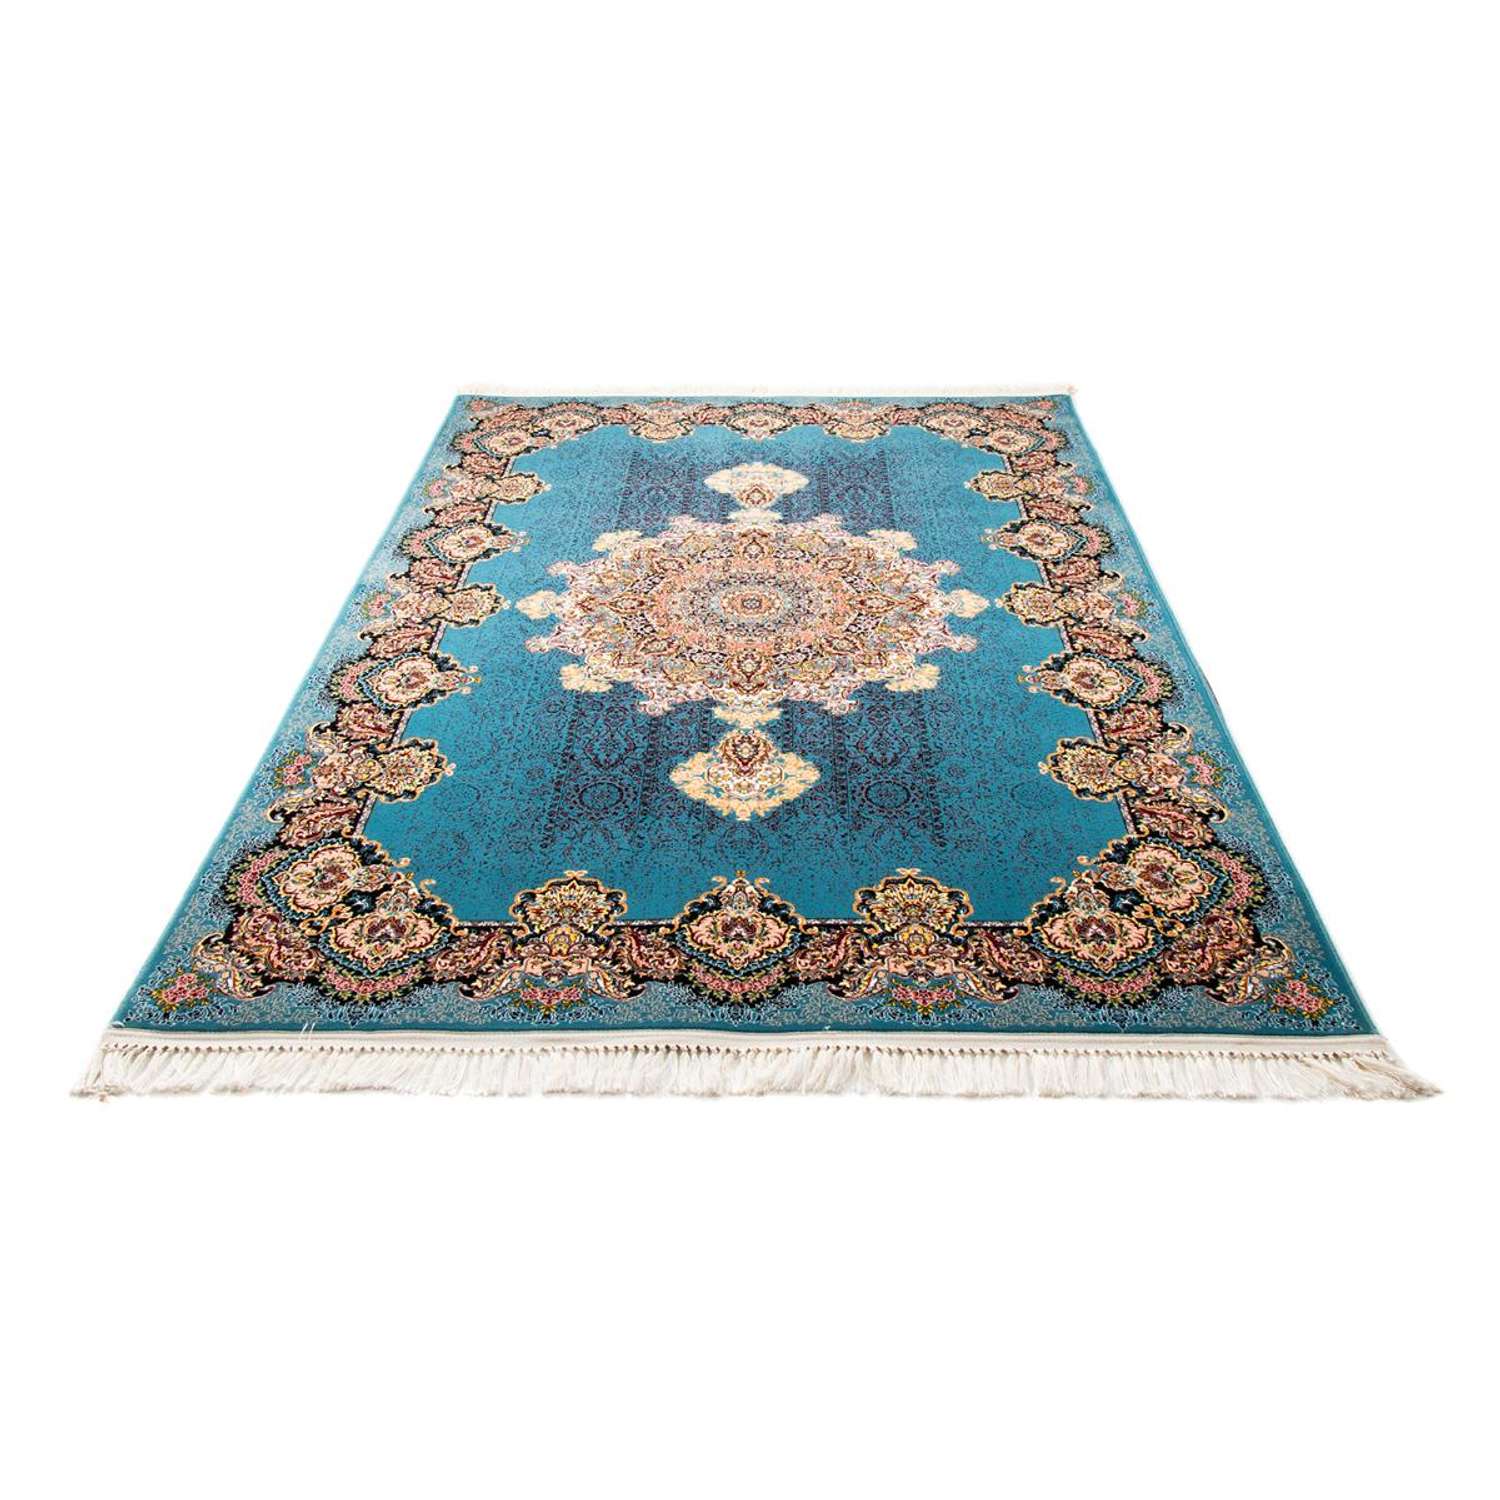 Orientalsk tæppe - Soraya - rektangulær